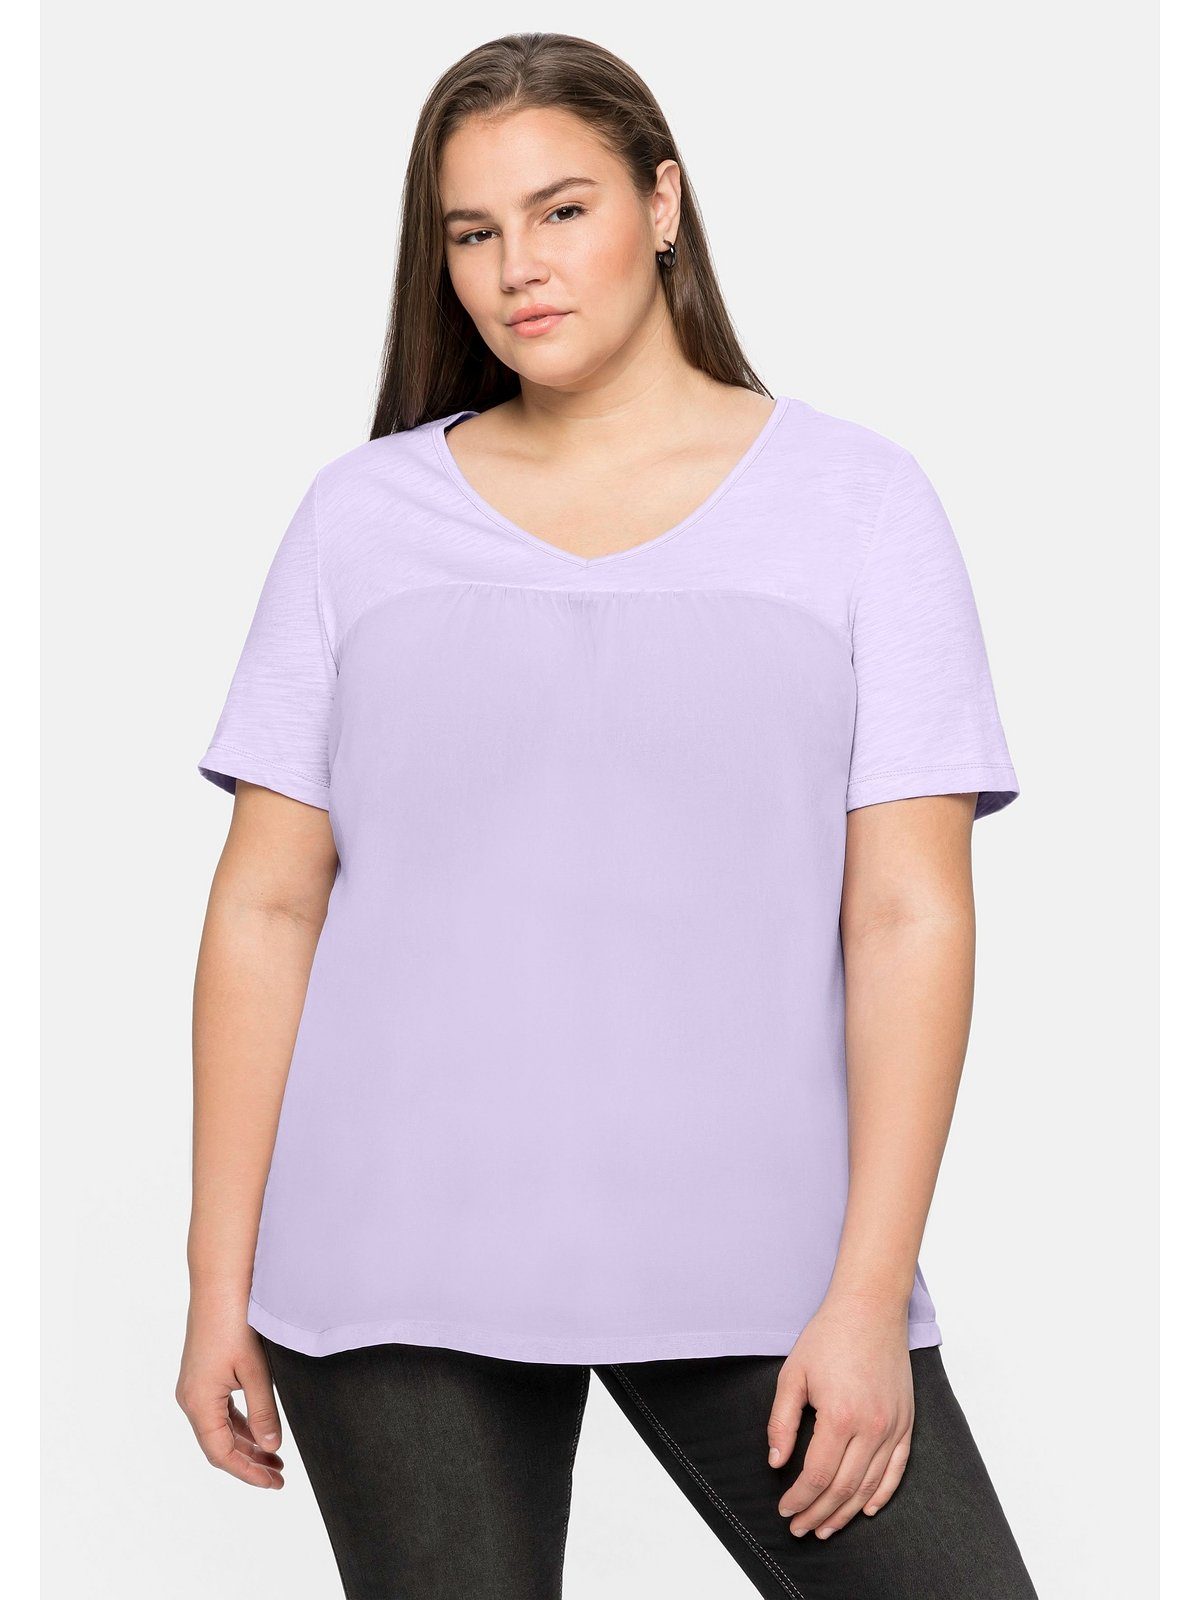 Sheego T-Shirt Große Größen im Materialmix, in A-Linie lavendel